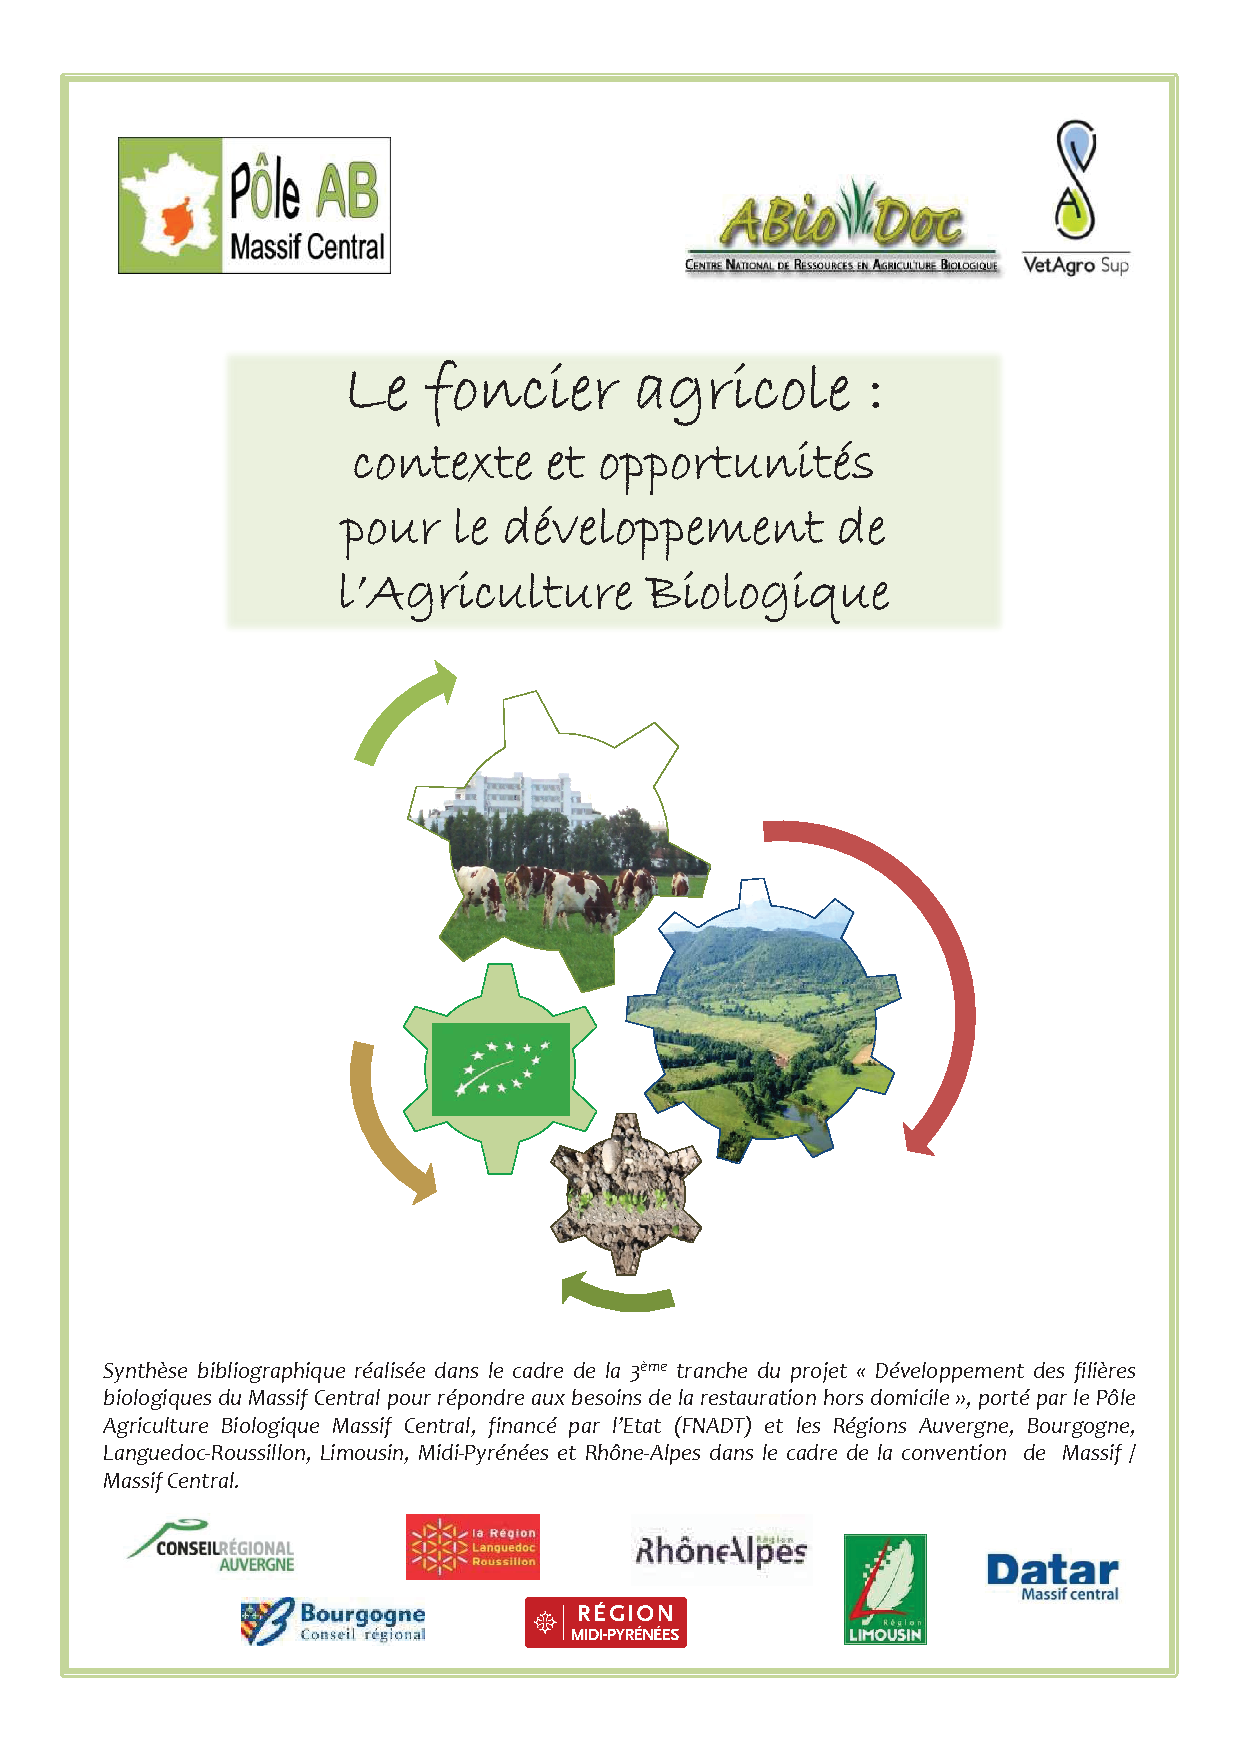 Le foncier agricole : contexte et opportunités pour le développement de l’Agriculture Biologique